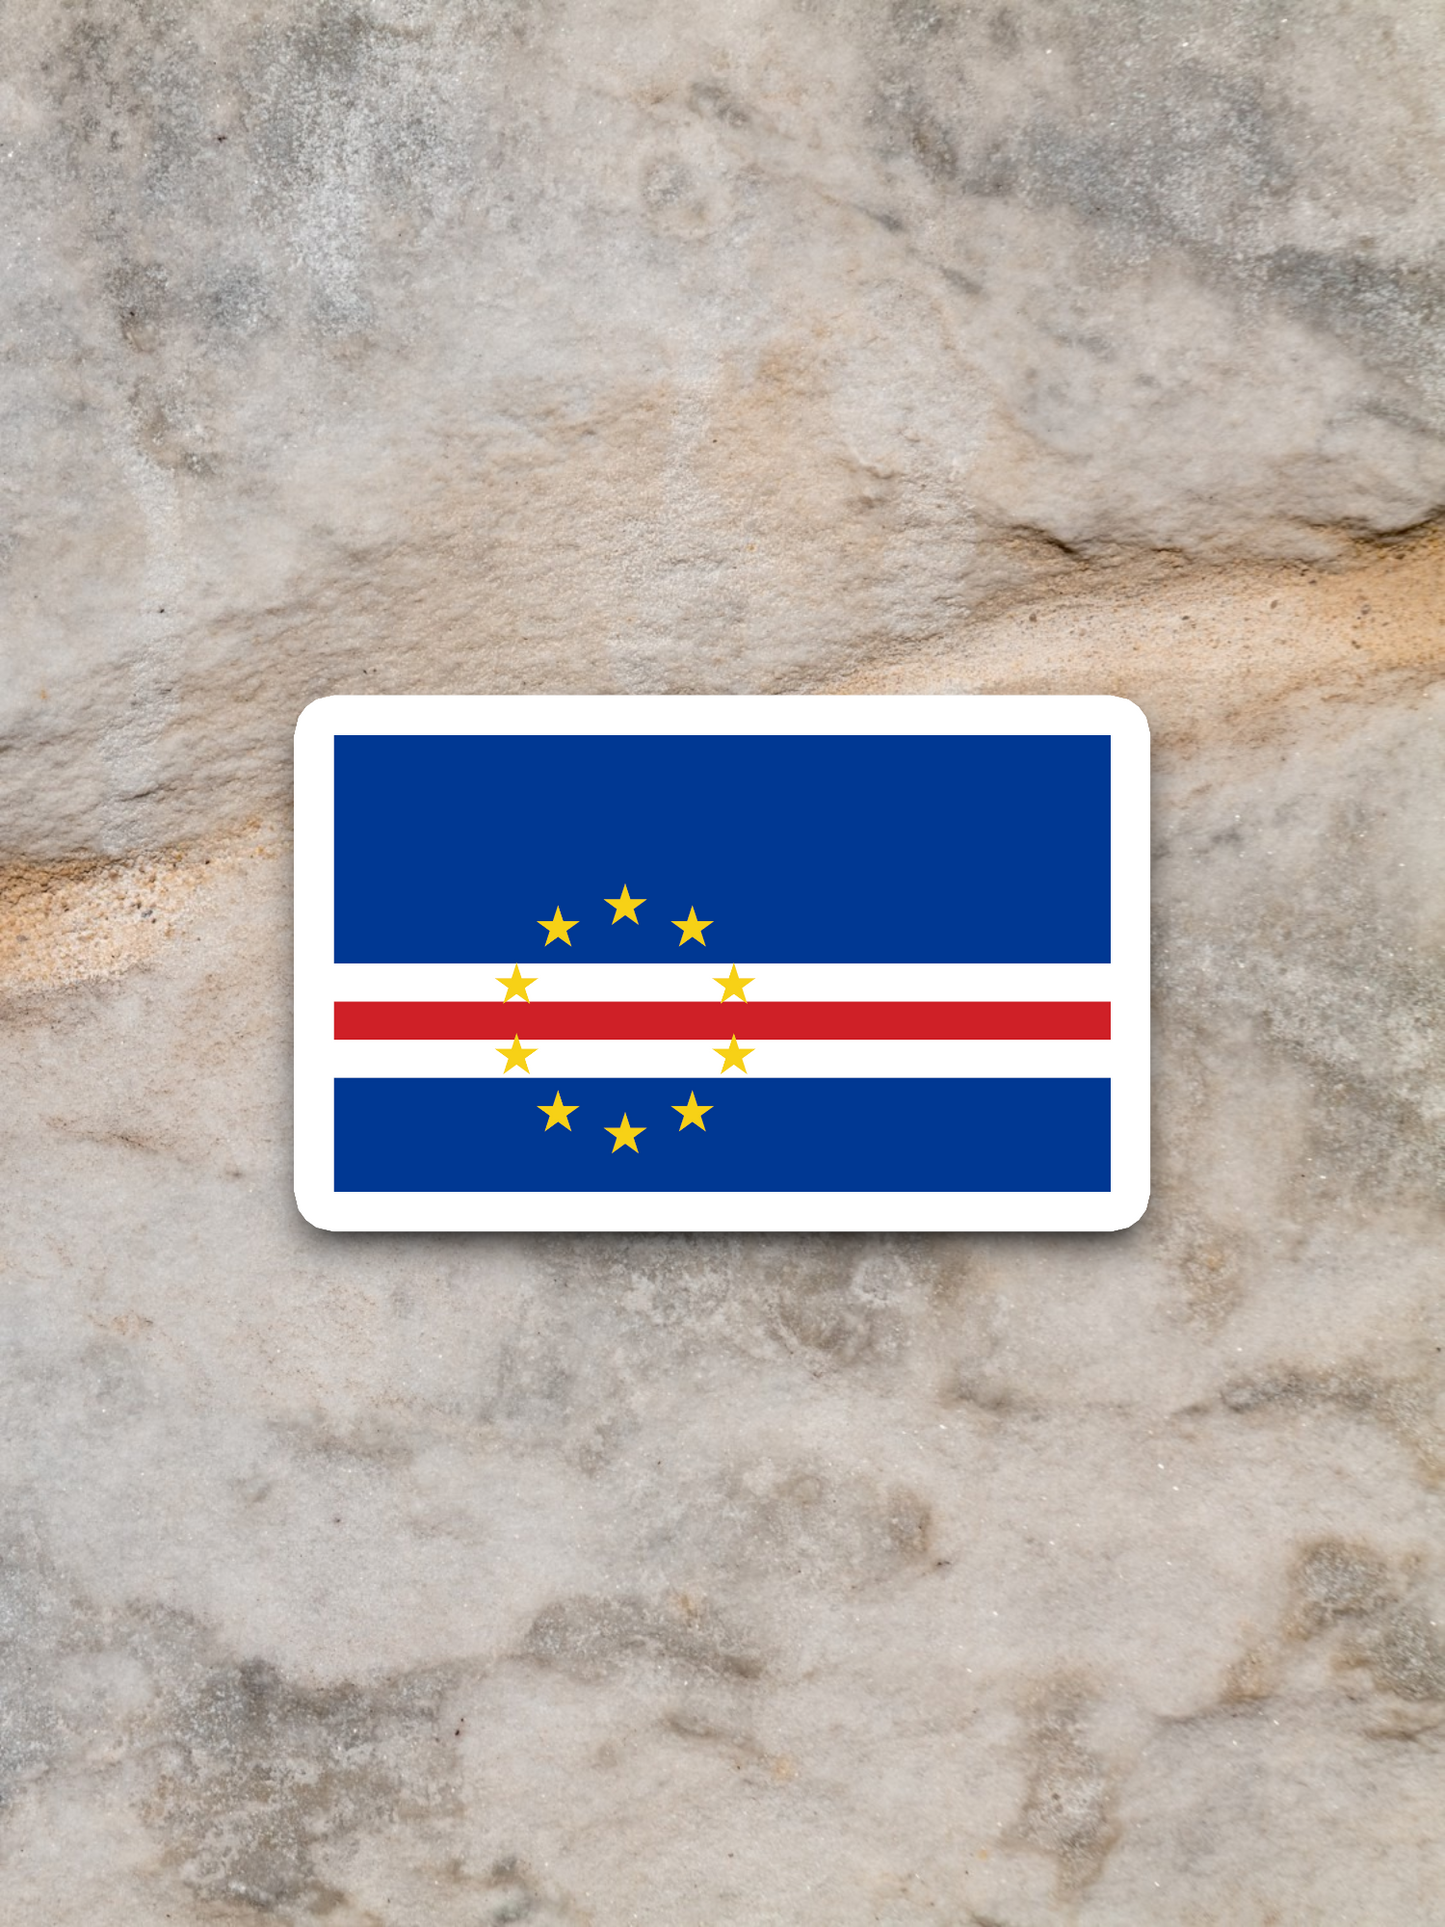 Cape Verde Flag - International Country Flag Sticker